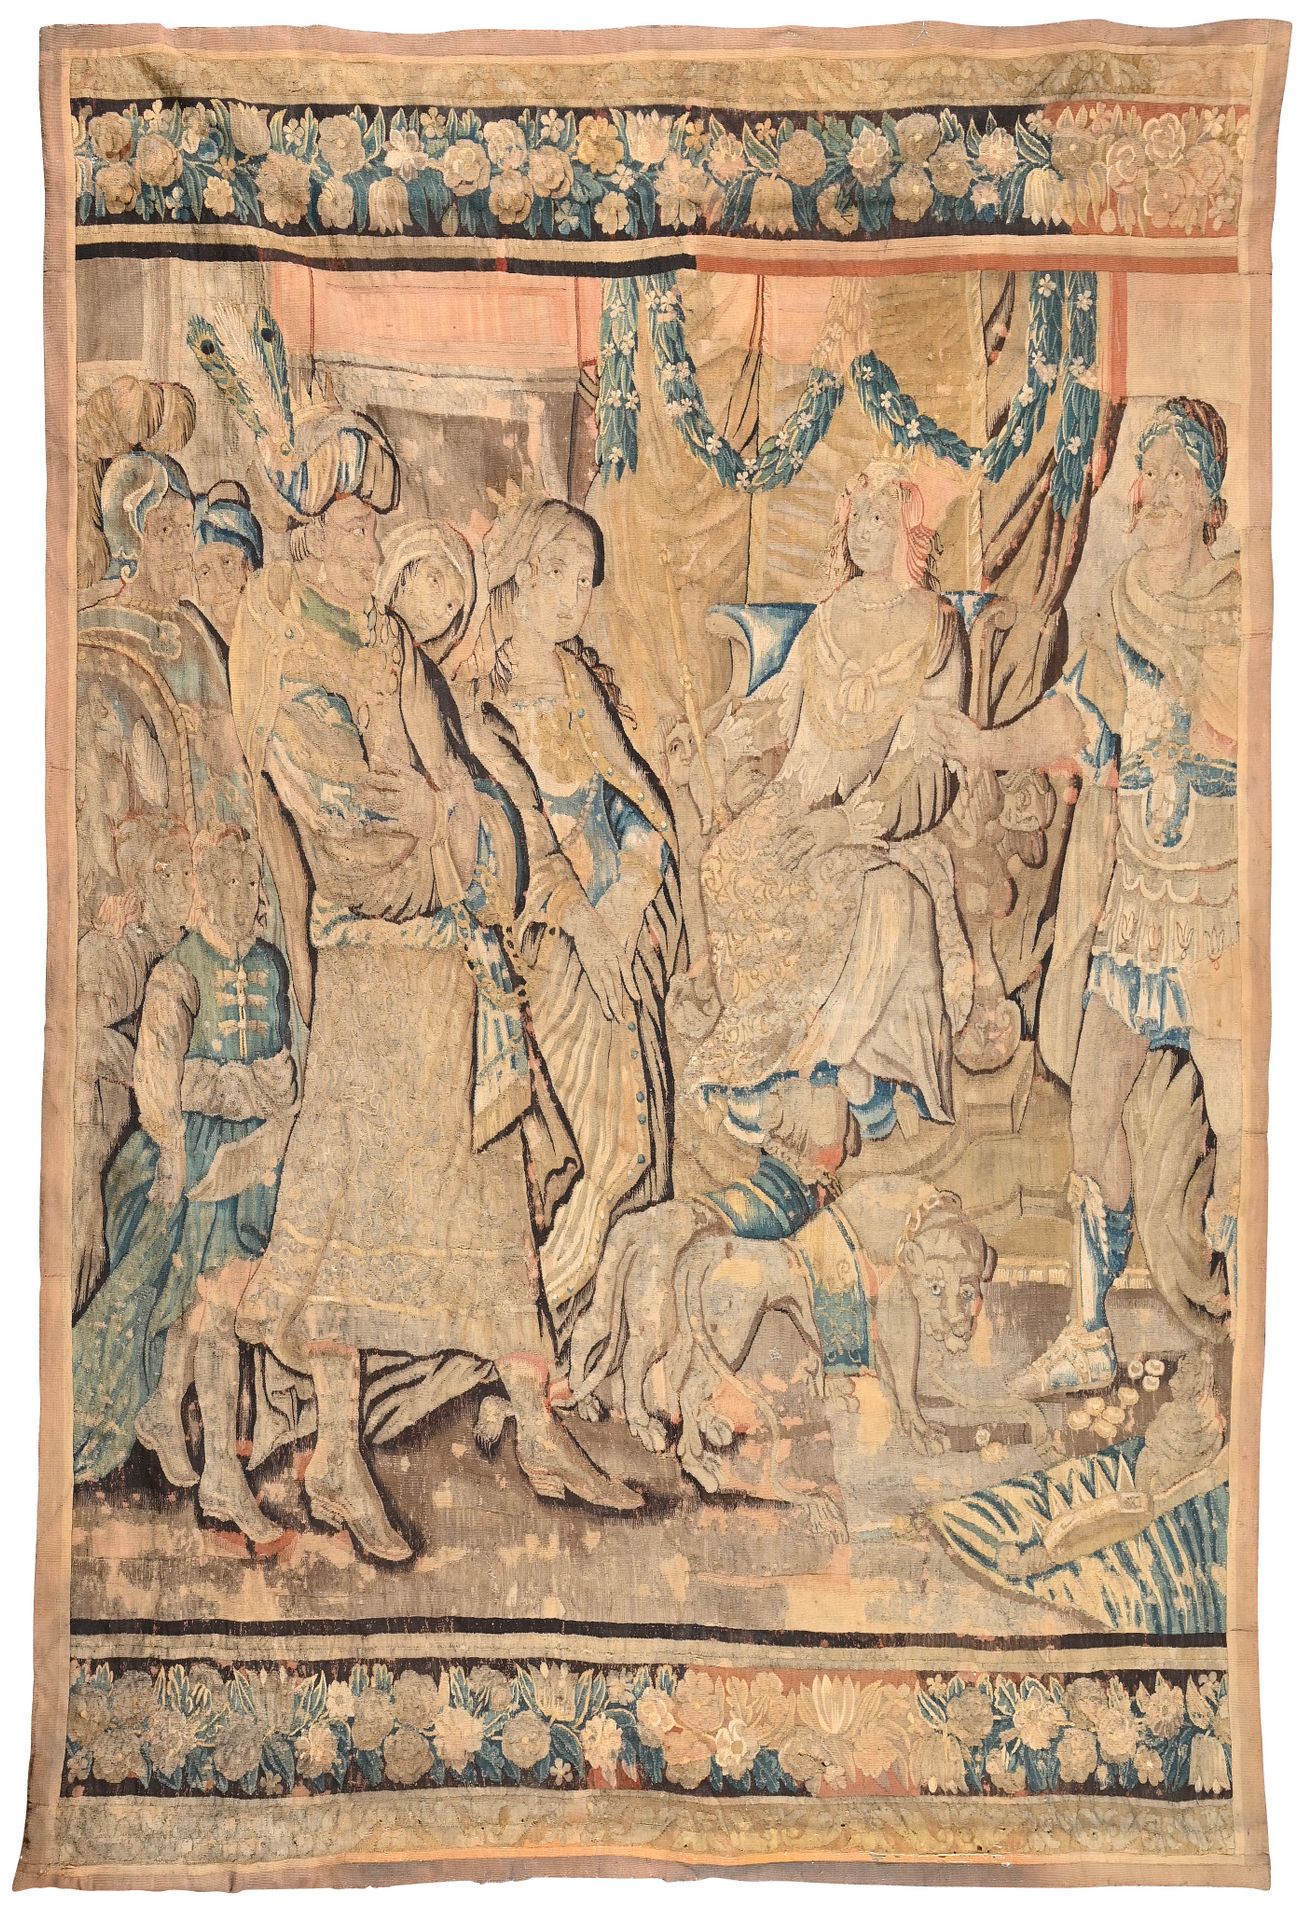 AUBUSSON 
克娄巴特拉和亚美尼亚国王的挂毯




十八世纪初




l.293厘米 - 长217厘米




事故和修复